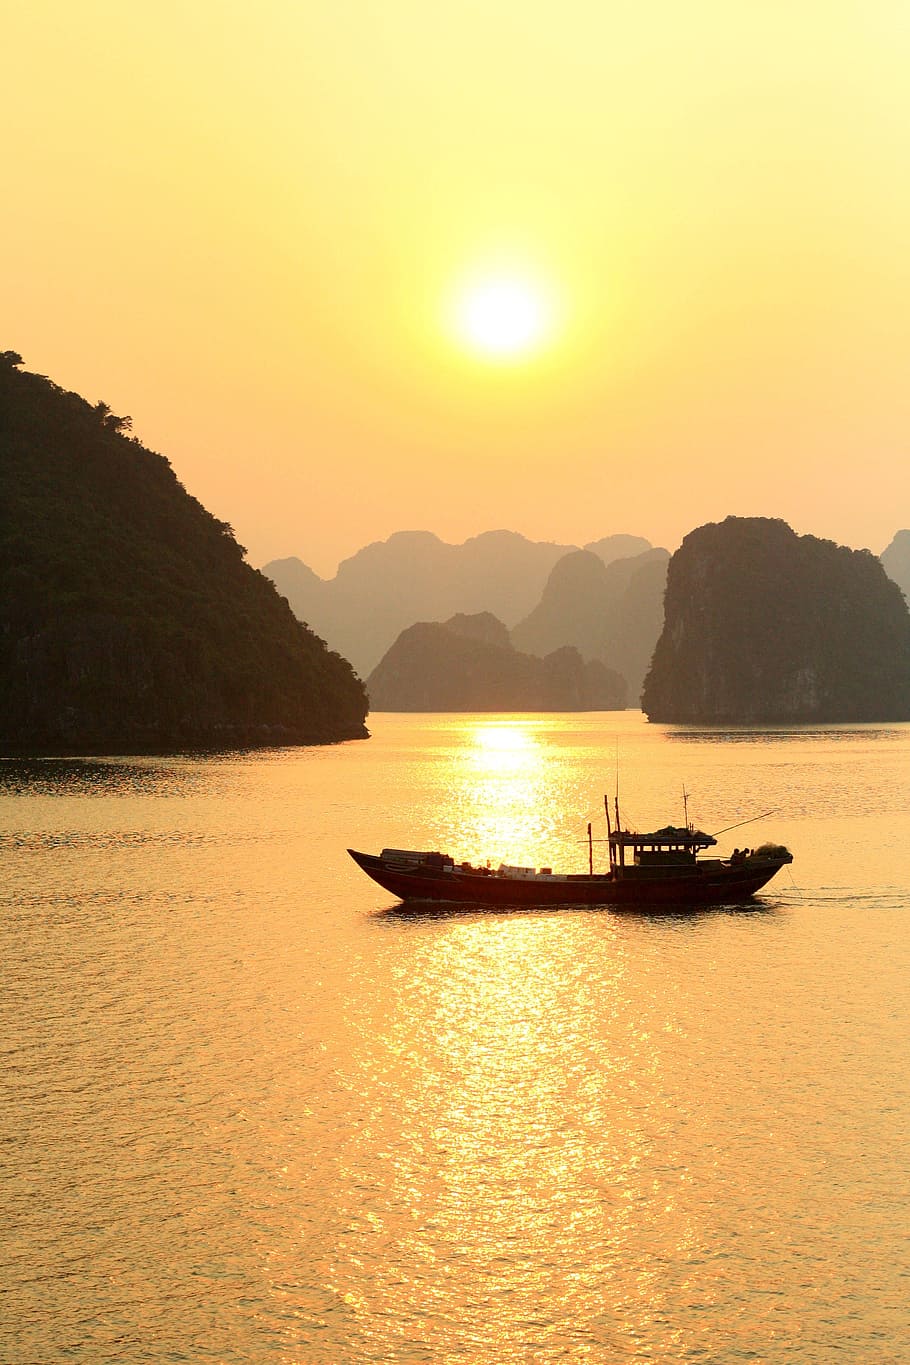 Baía de Ha Long, Barco, Vietnã, Karsts, pôr do sol, paisagens, montanha, cena tranquila, reflexão, natureza